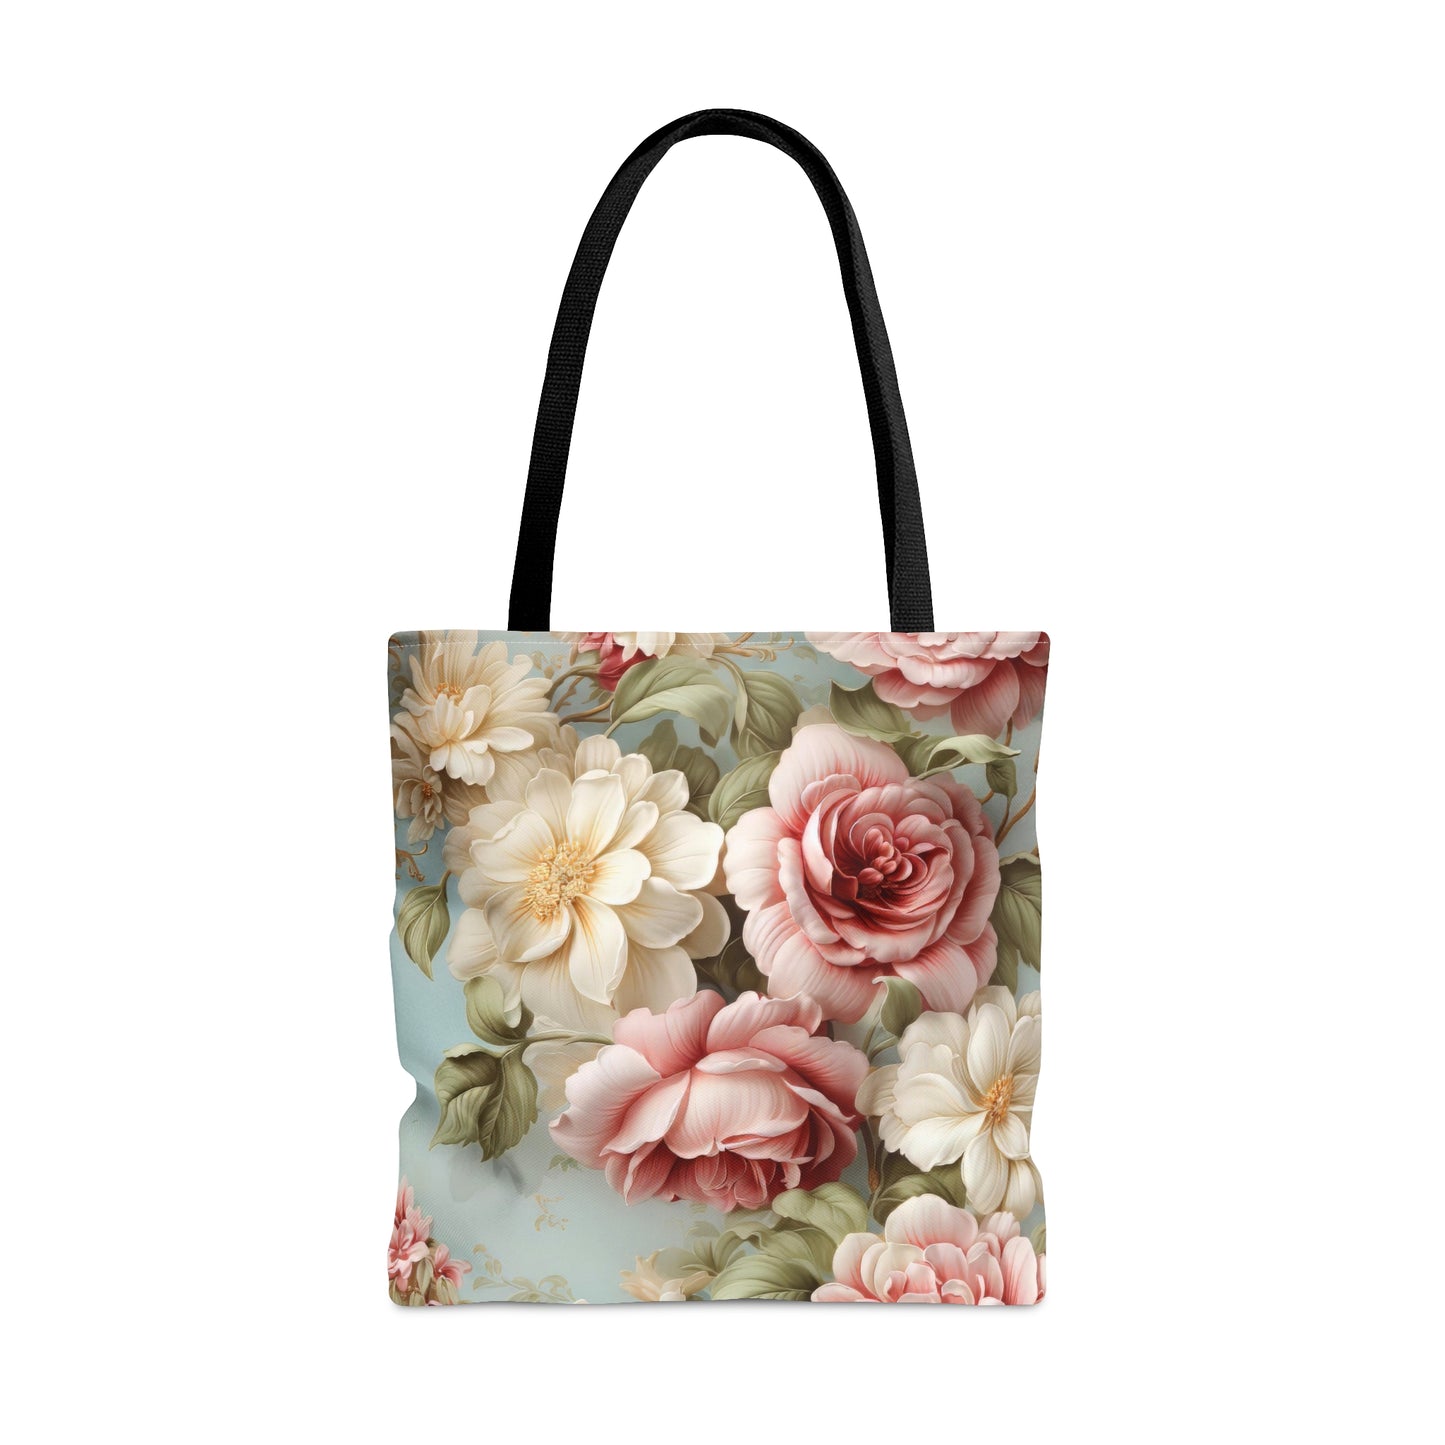 Floral Rose Tote Bag